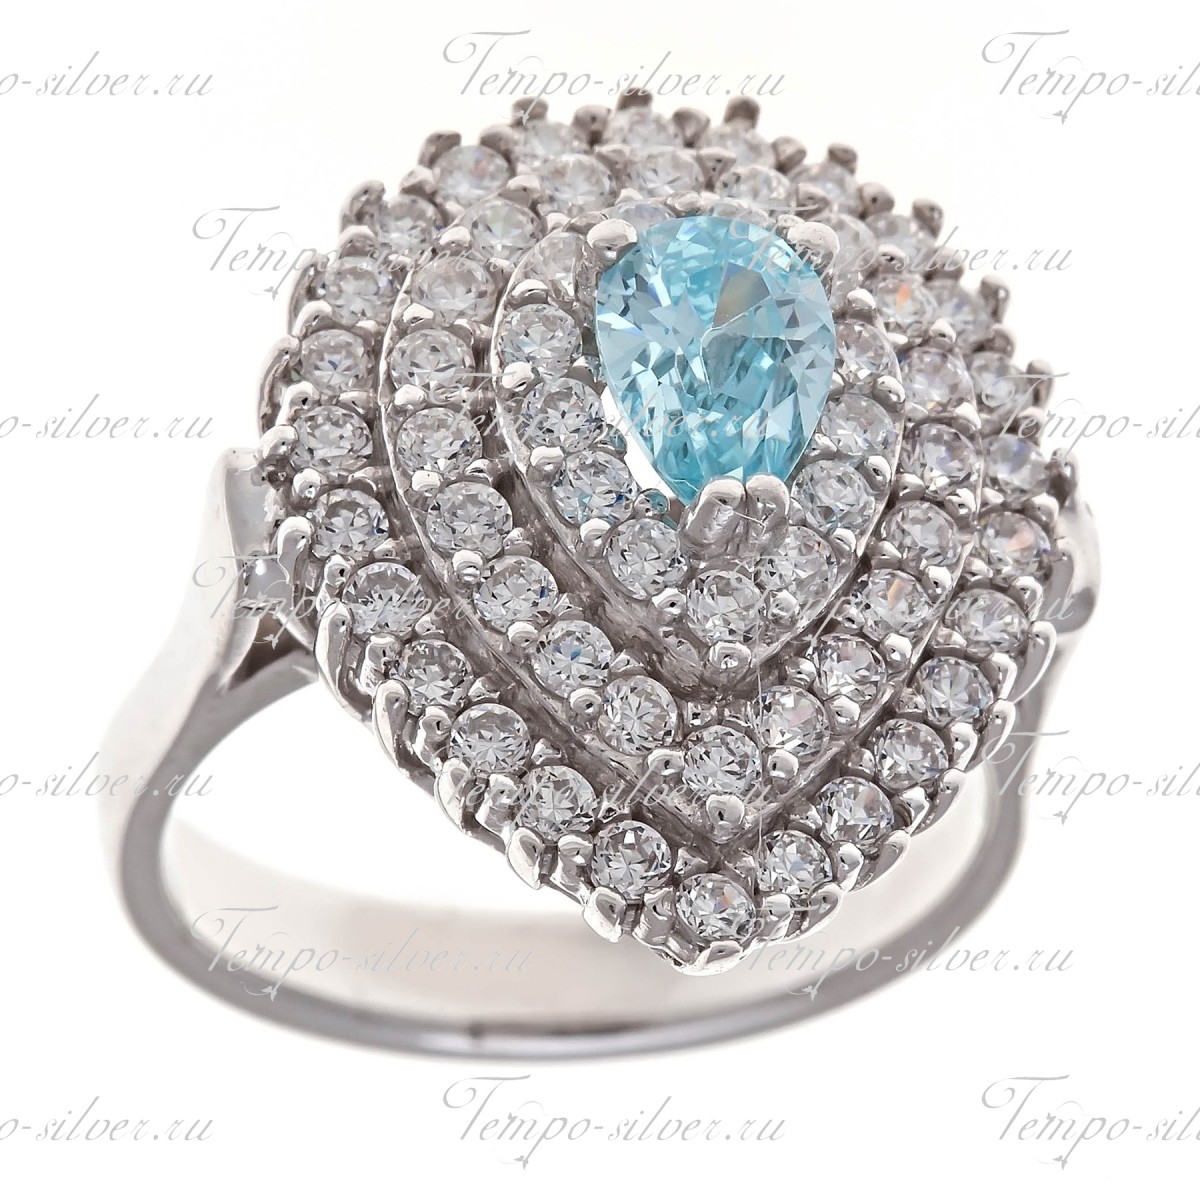 Кольцо серебряное в форме капли с голубым камнем в центре цена